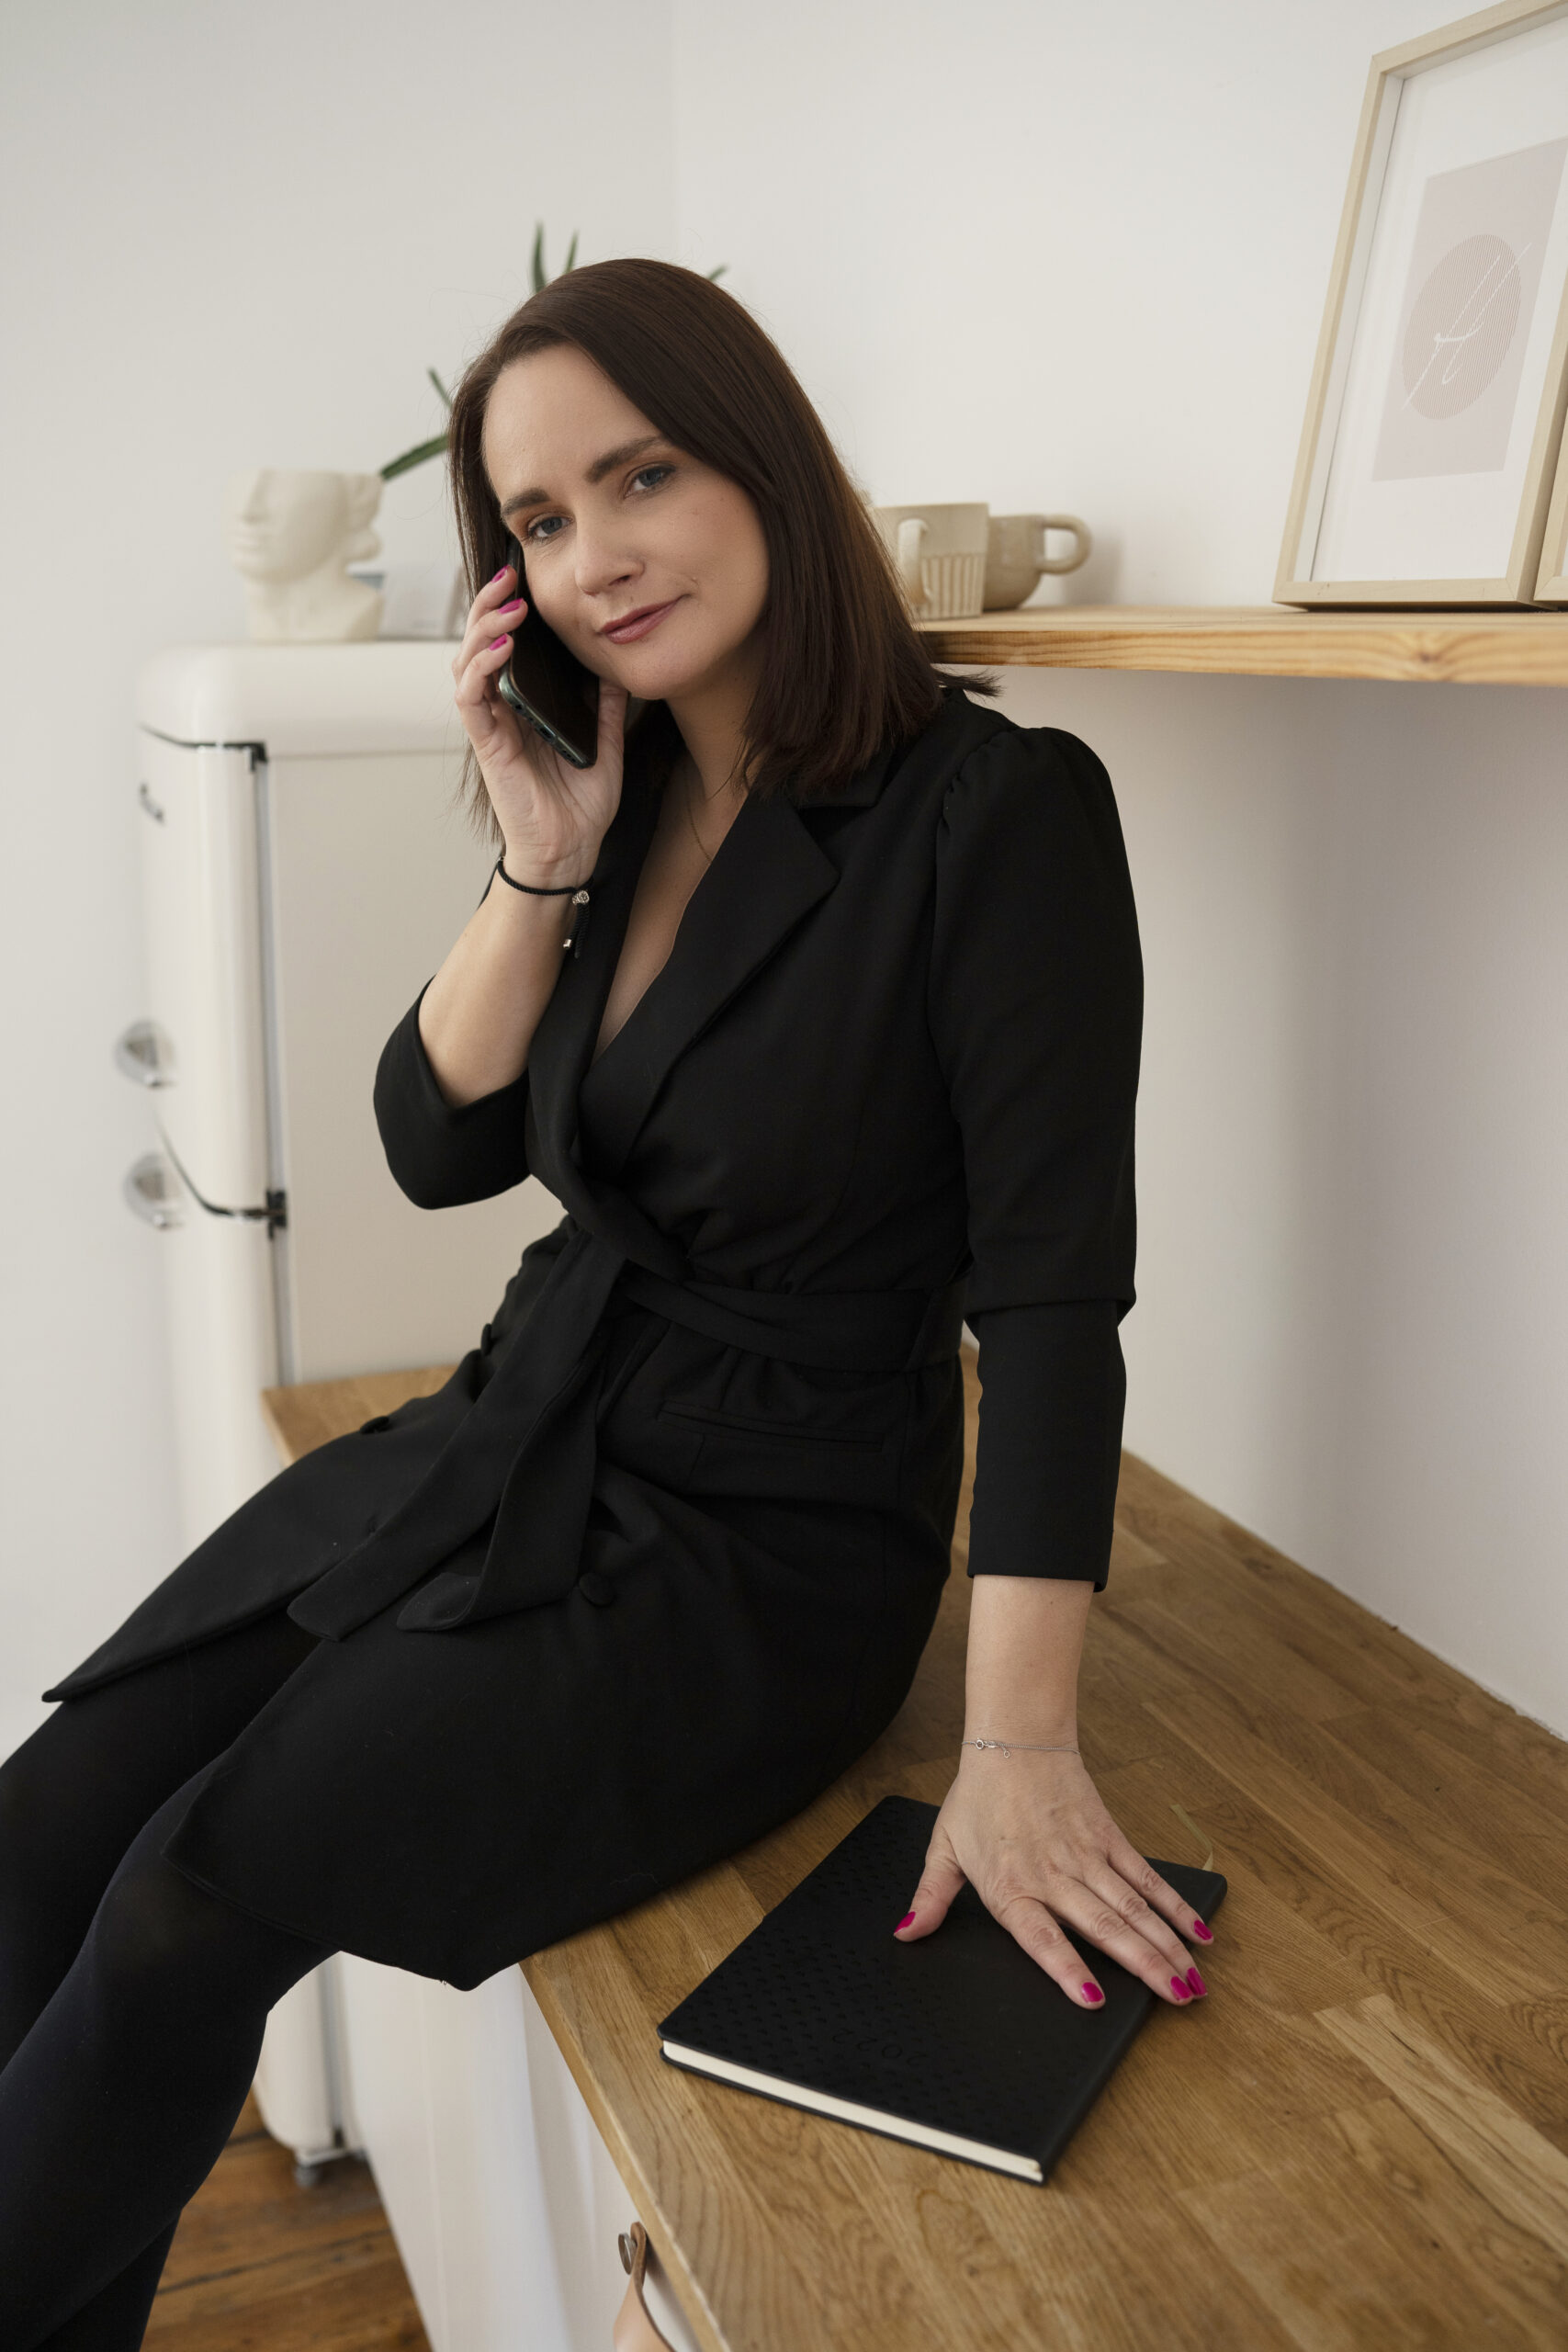 Dominika Trybuszewska, wirtualna asystentka, rozmawia przez telefon